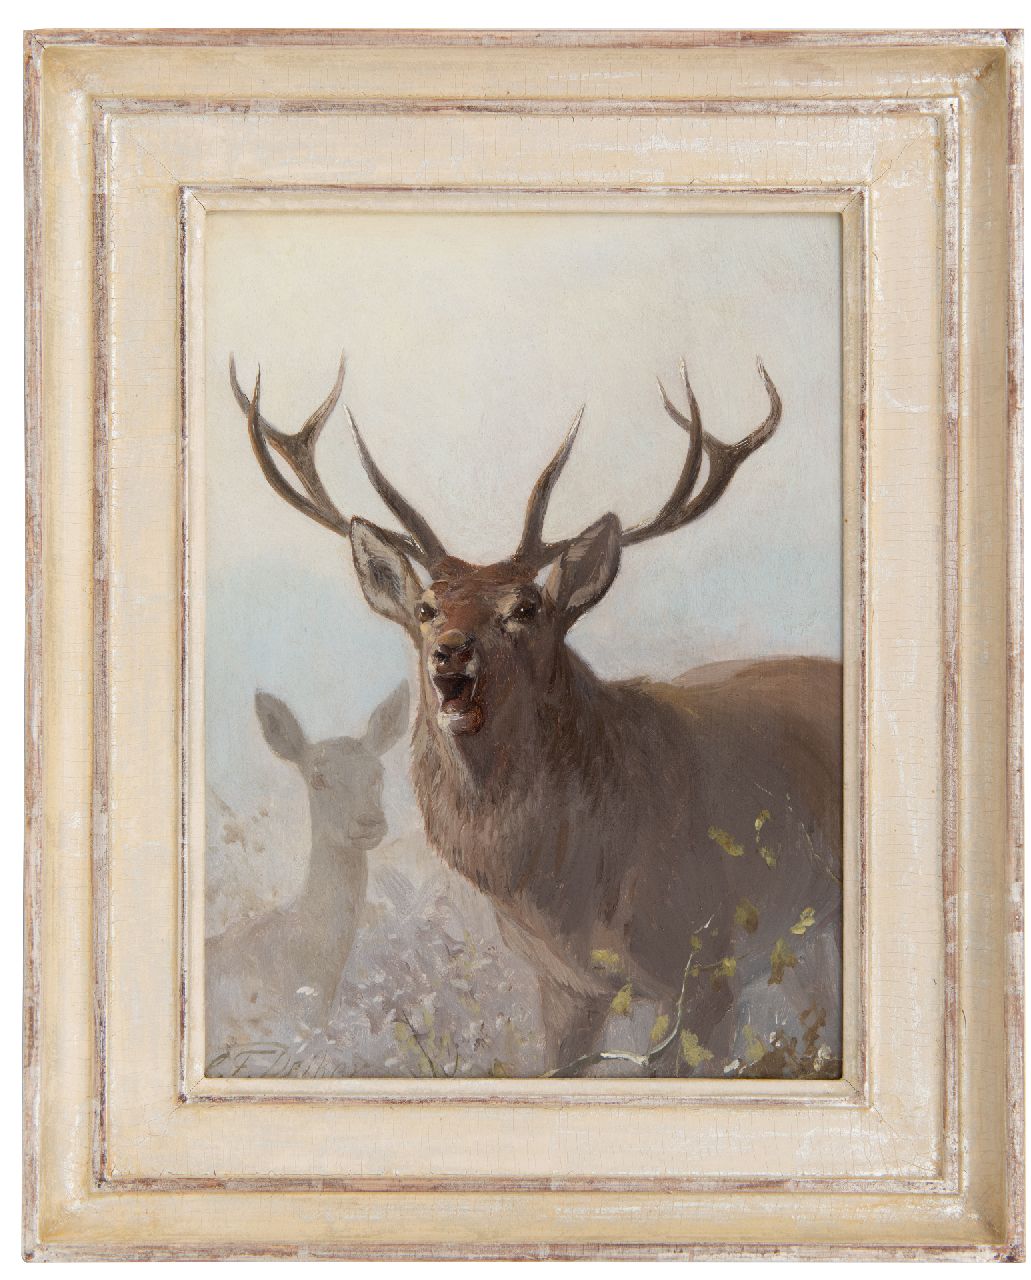 Deiker C.F.  | Carl Friedrich Deiker, Roaring stag, oil on panel 27.0 x 20.3 cm, signed l.l.